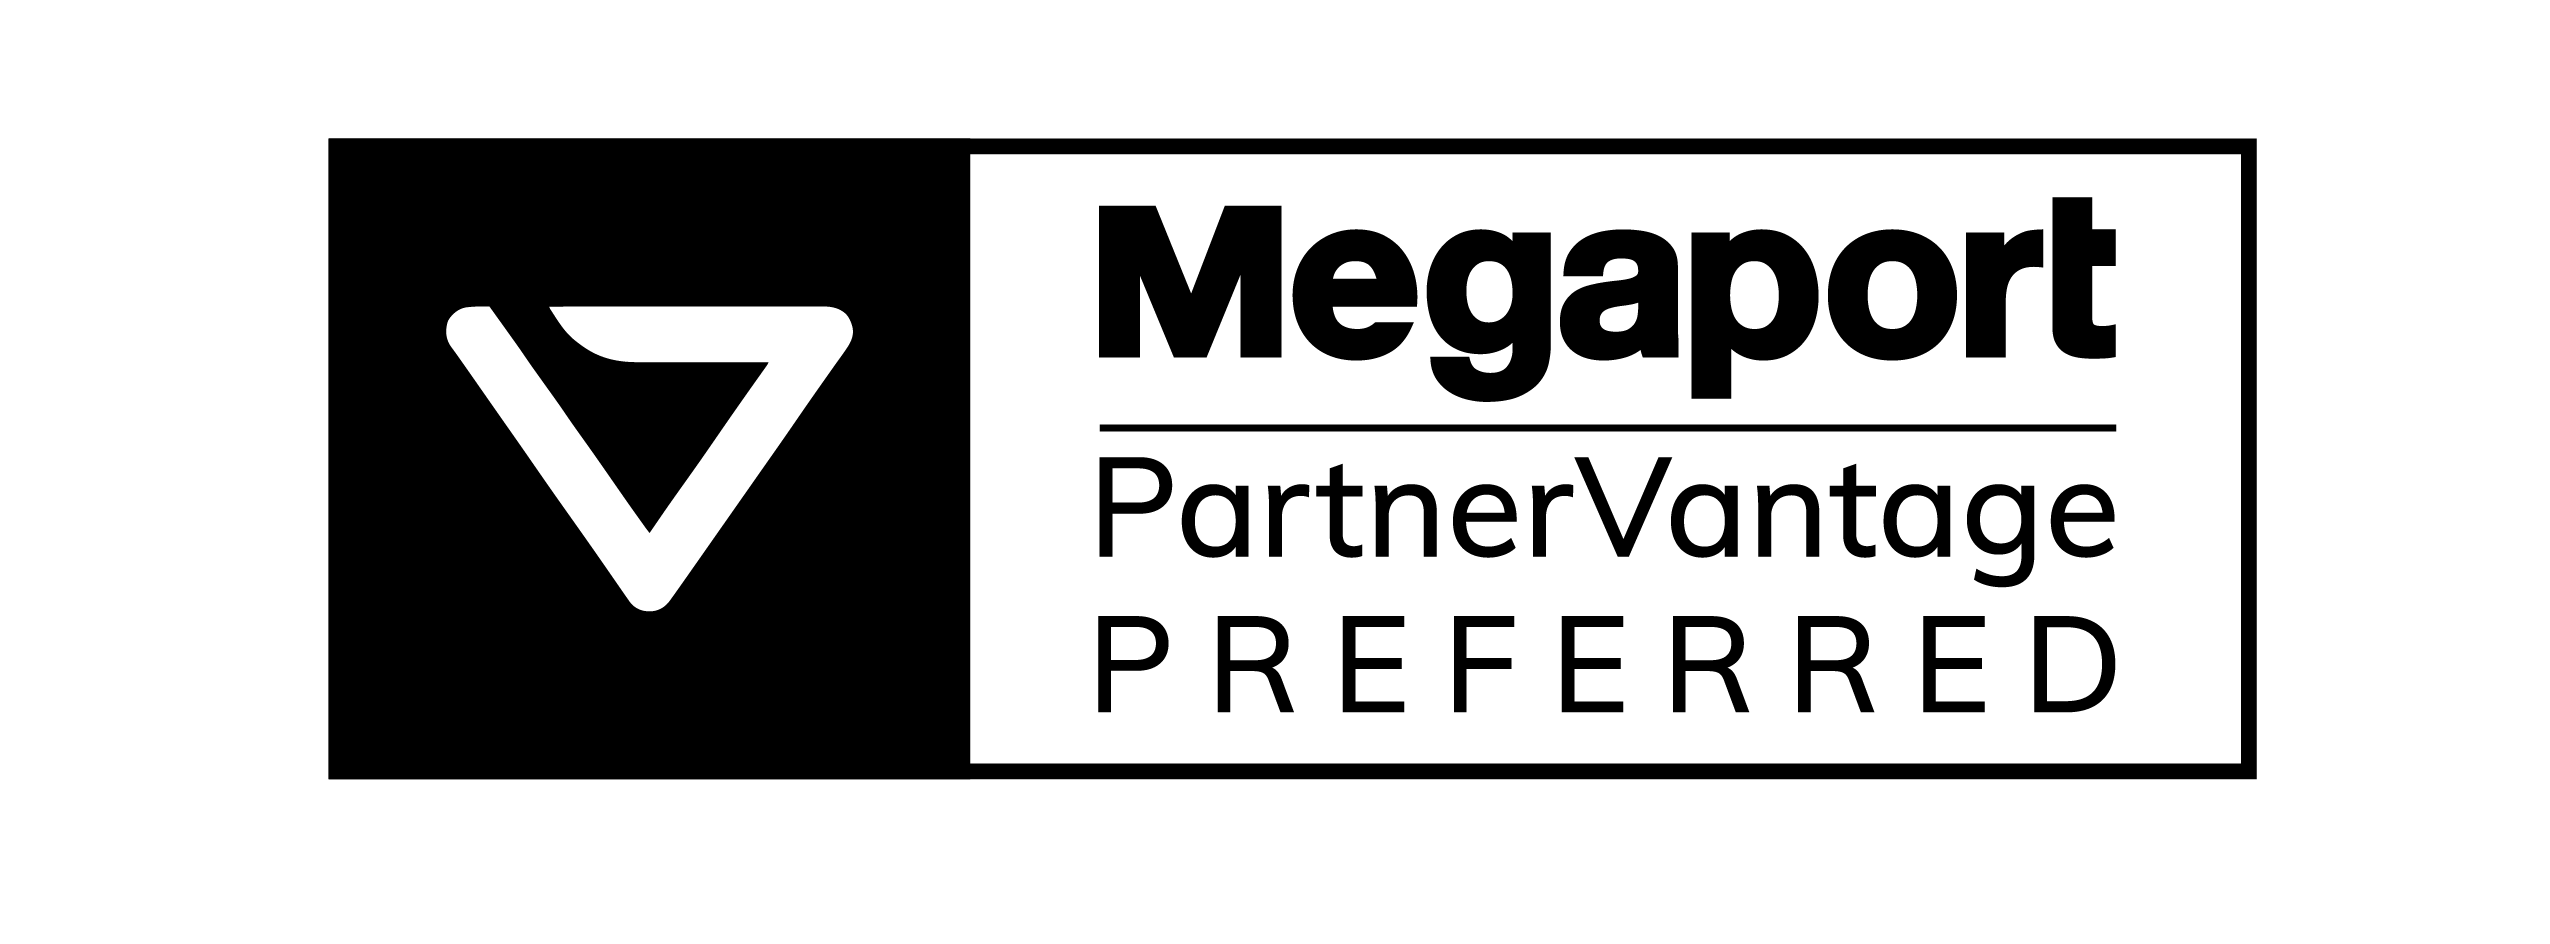 Beyond.pl | Megaport partner logo